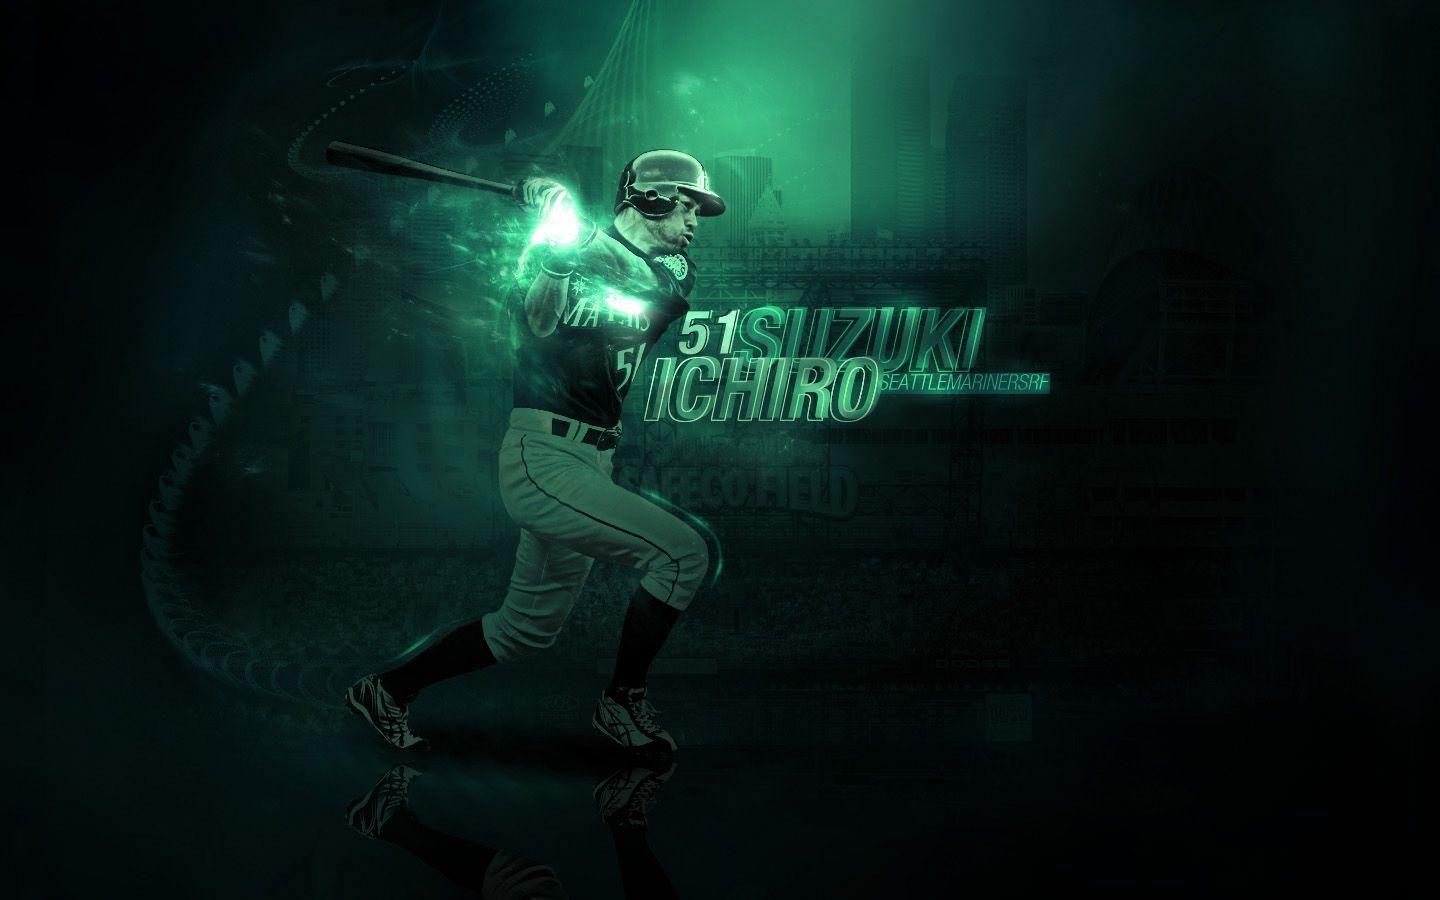 Ichiro Suzuki MLB wallpaper